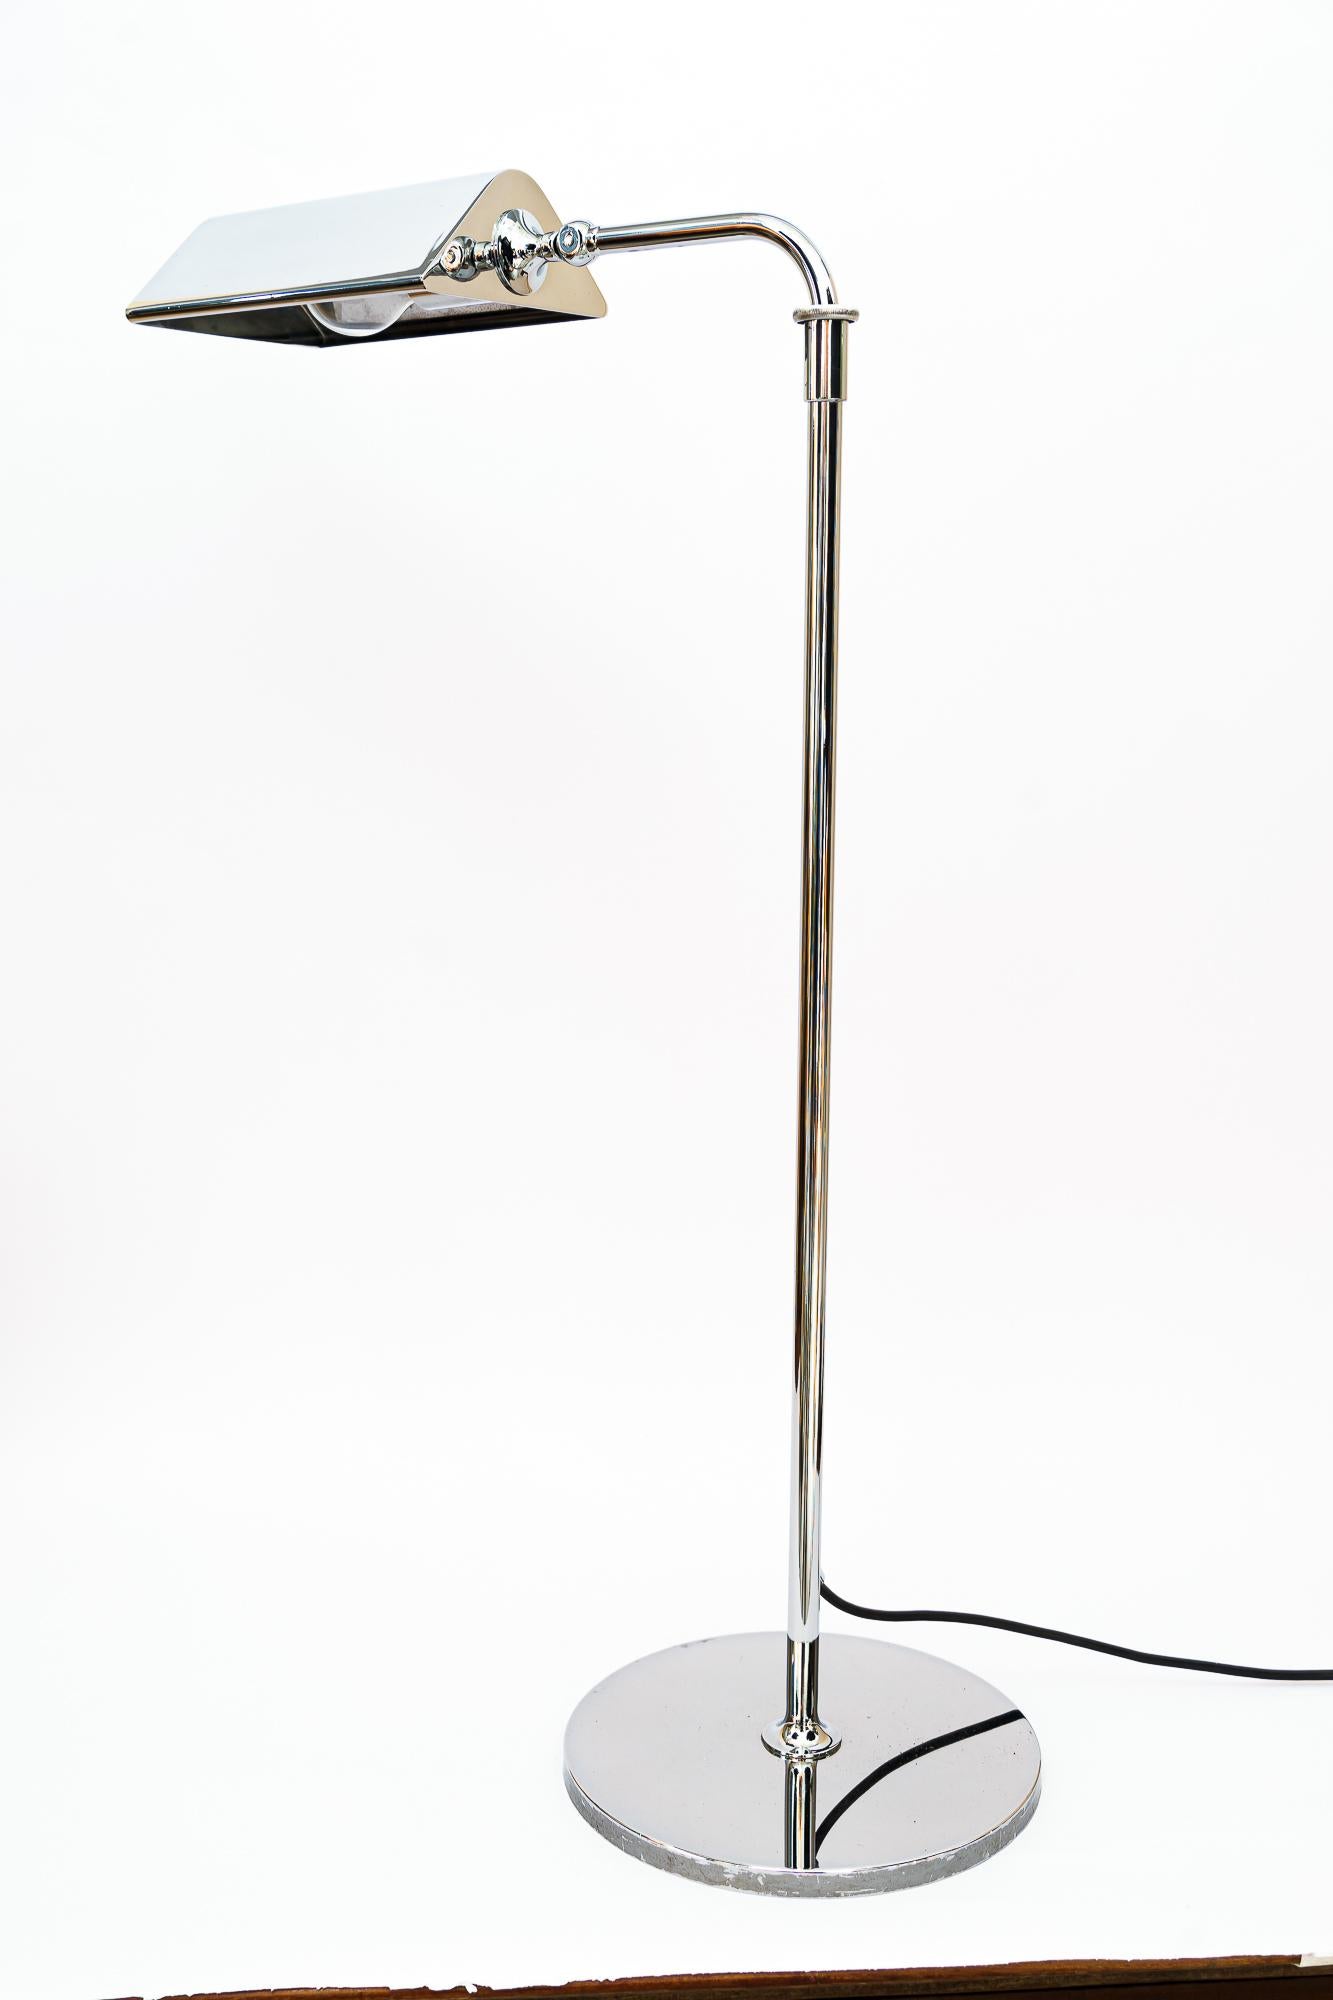 Verstellbare vernickelte Stehlampe Vienna aus den 1950er Jahren

Ausziehbare Stehleuchte von 78cm bis 125cm
Ursprünglicher Zustand